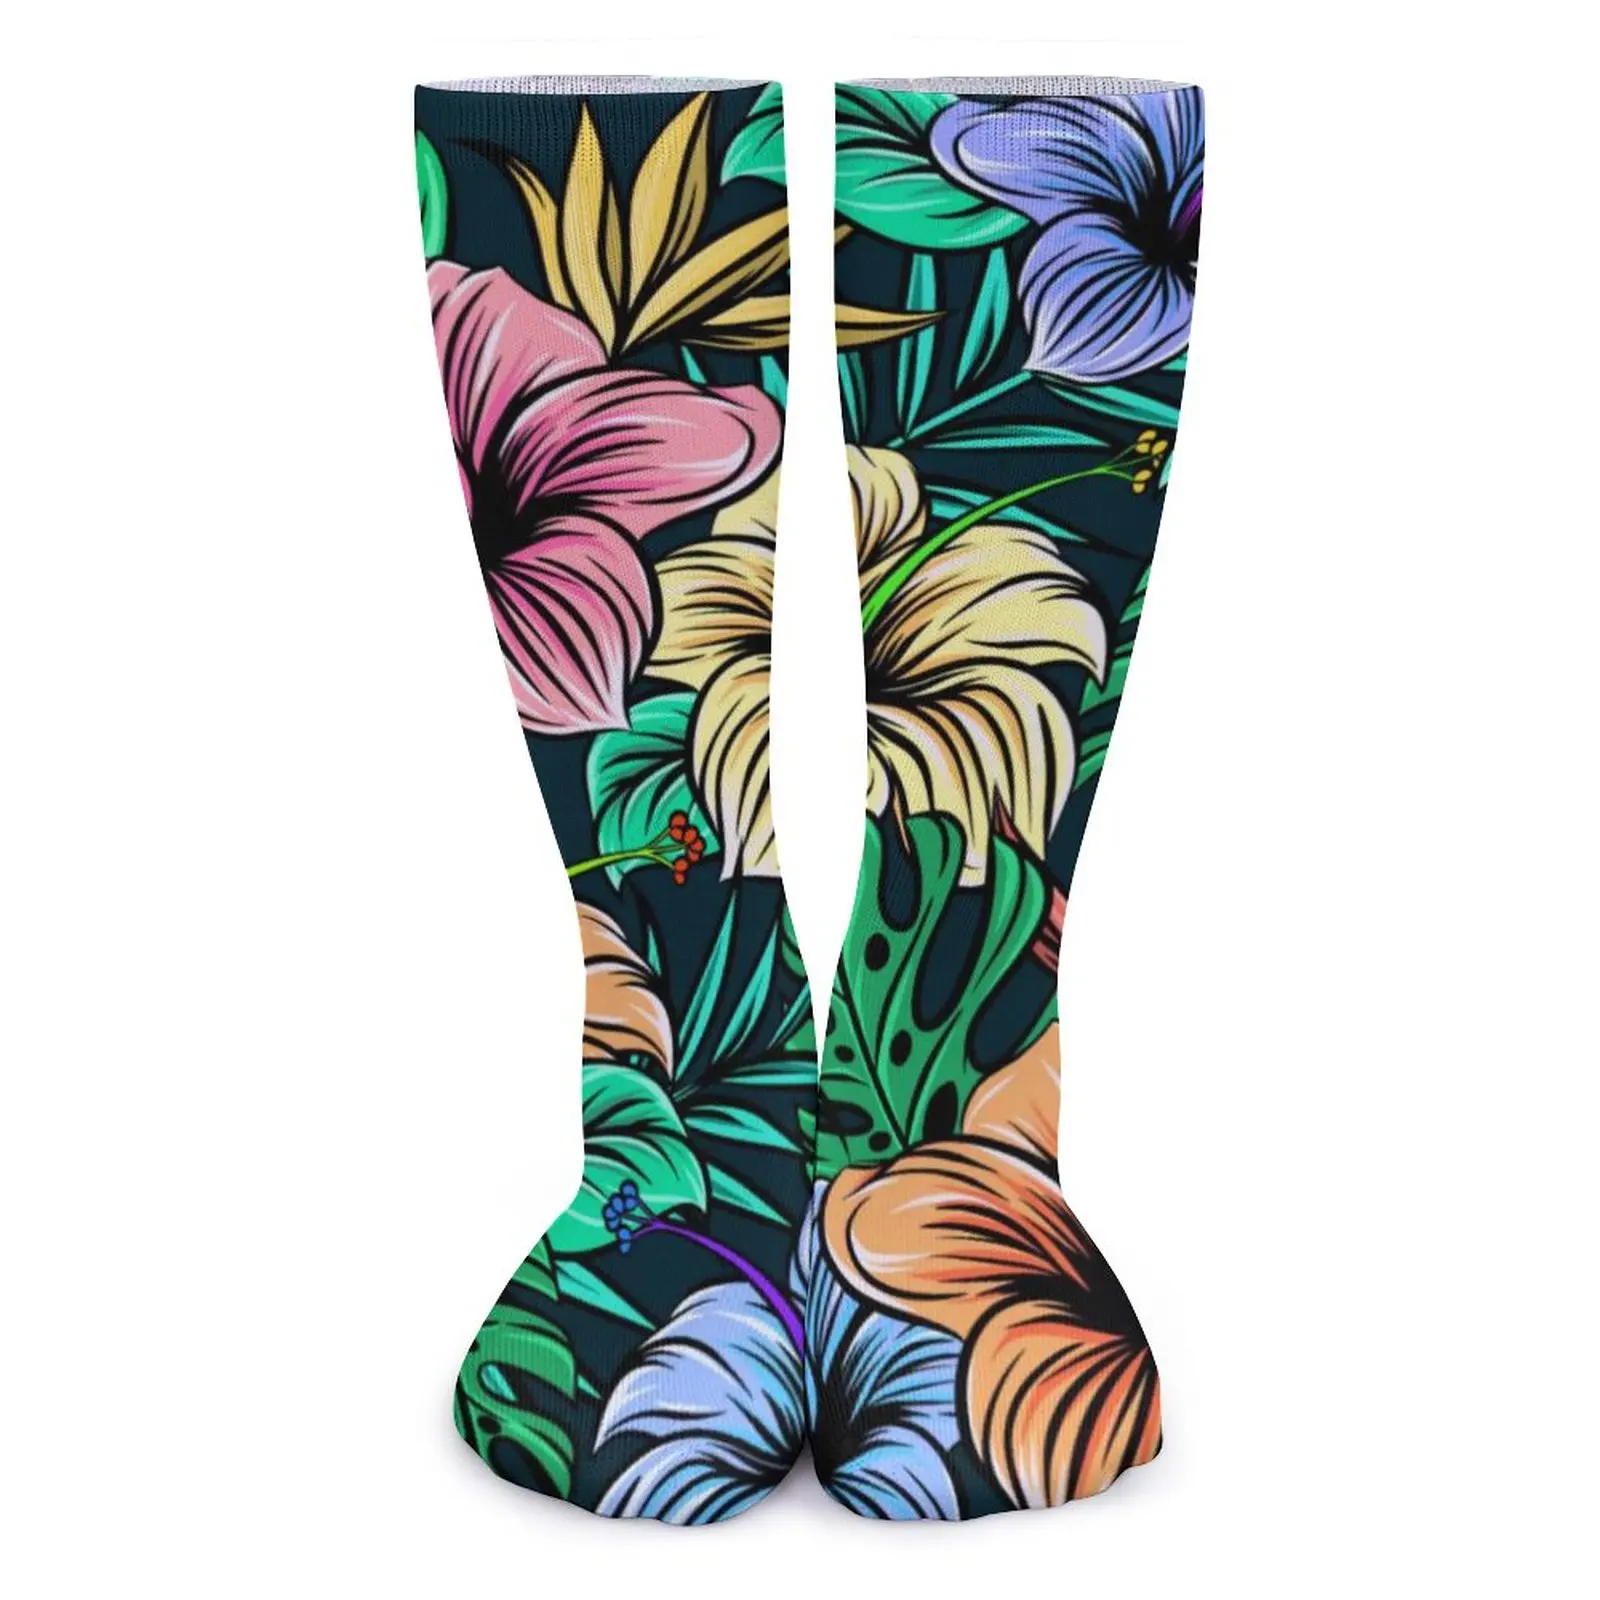 

Носки с рисунком пальмовых листьев, зимние чулки с тропическим цветочным принтом, забавные женские теплые мягкие носки, нескользящие носки с графическим рисунком для спорта на открытом воздухе